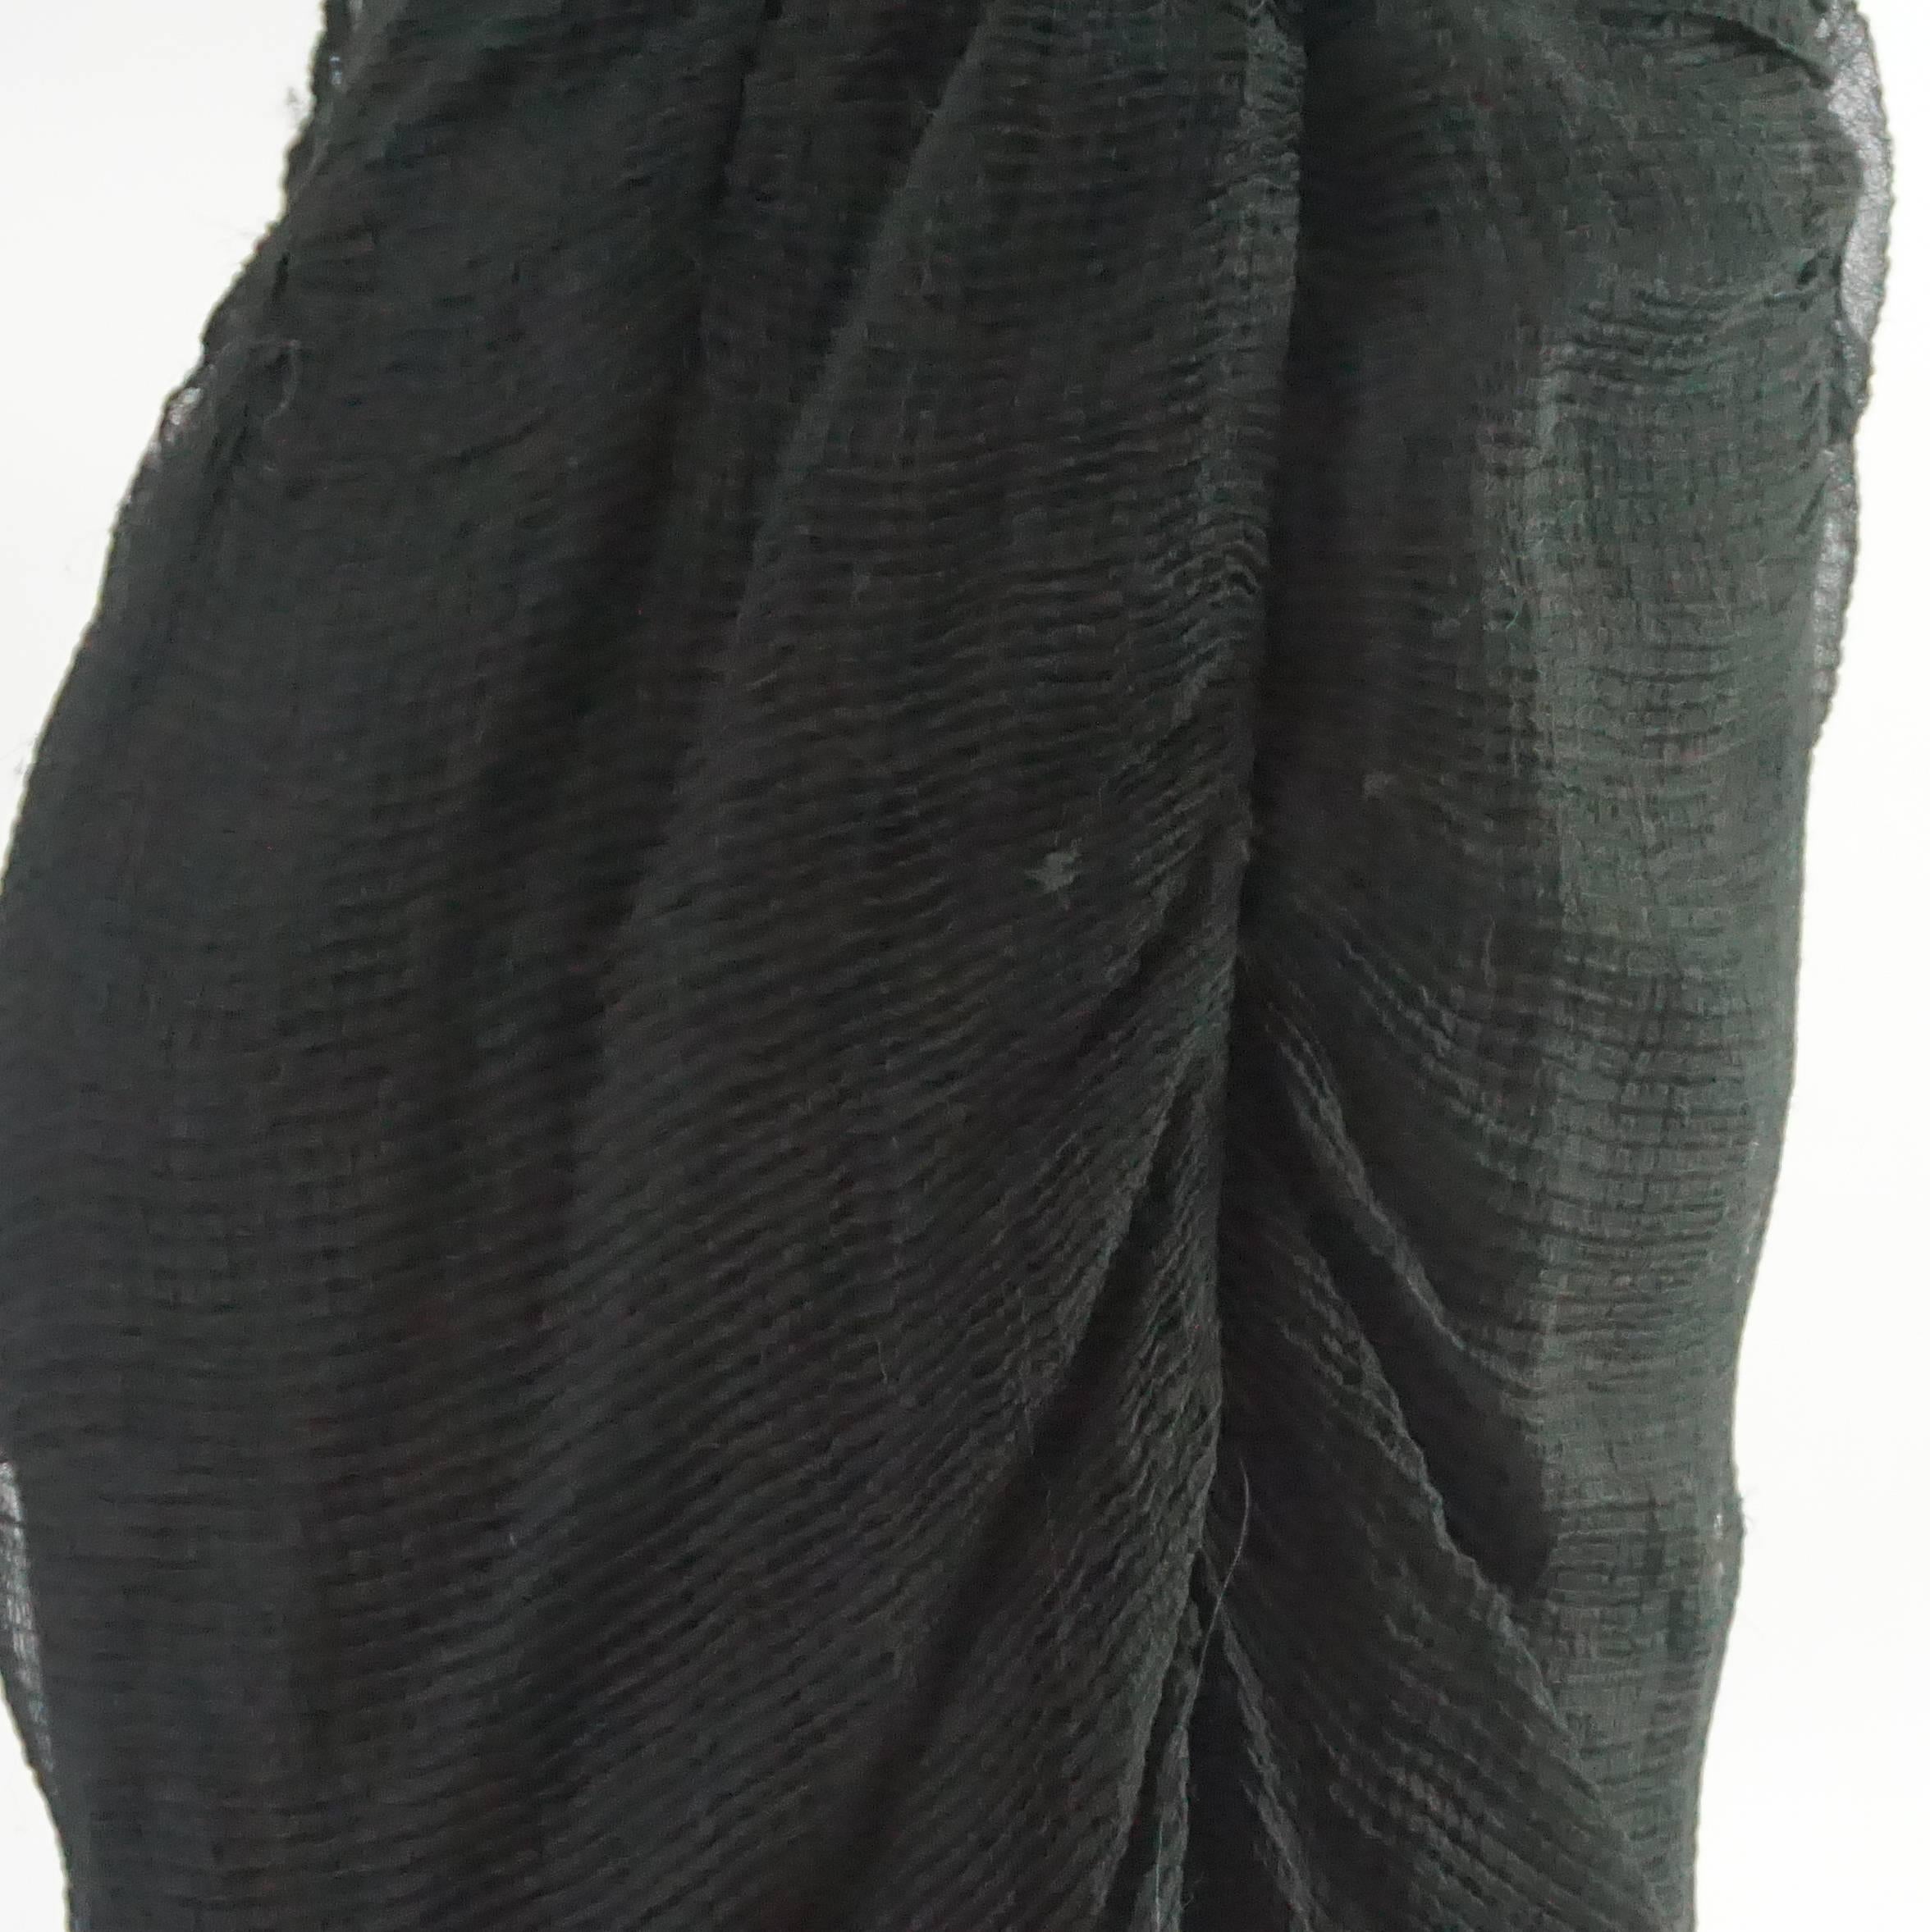 Chado Black Silk Chiffon Pants – 6 3